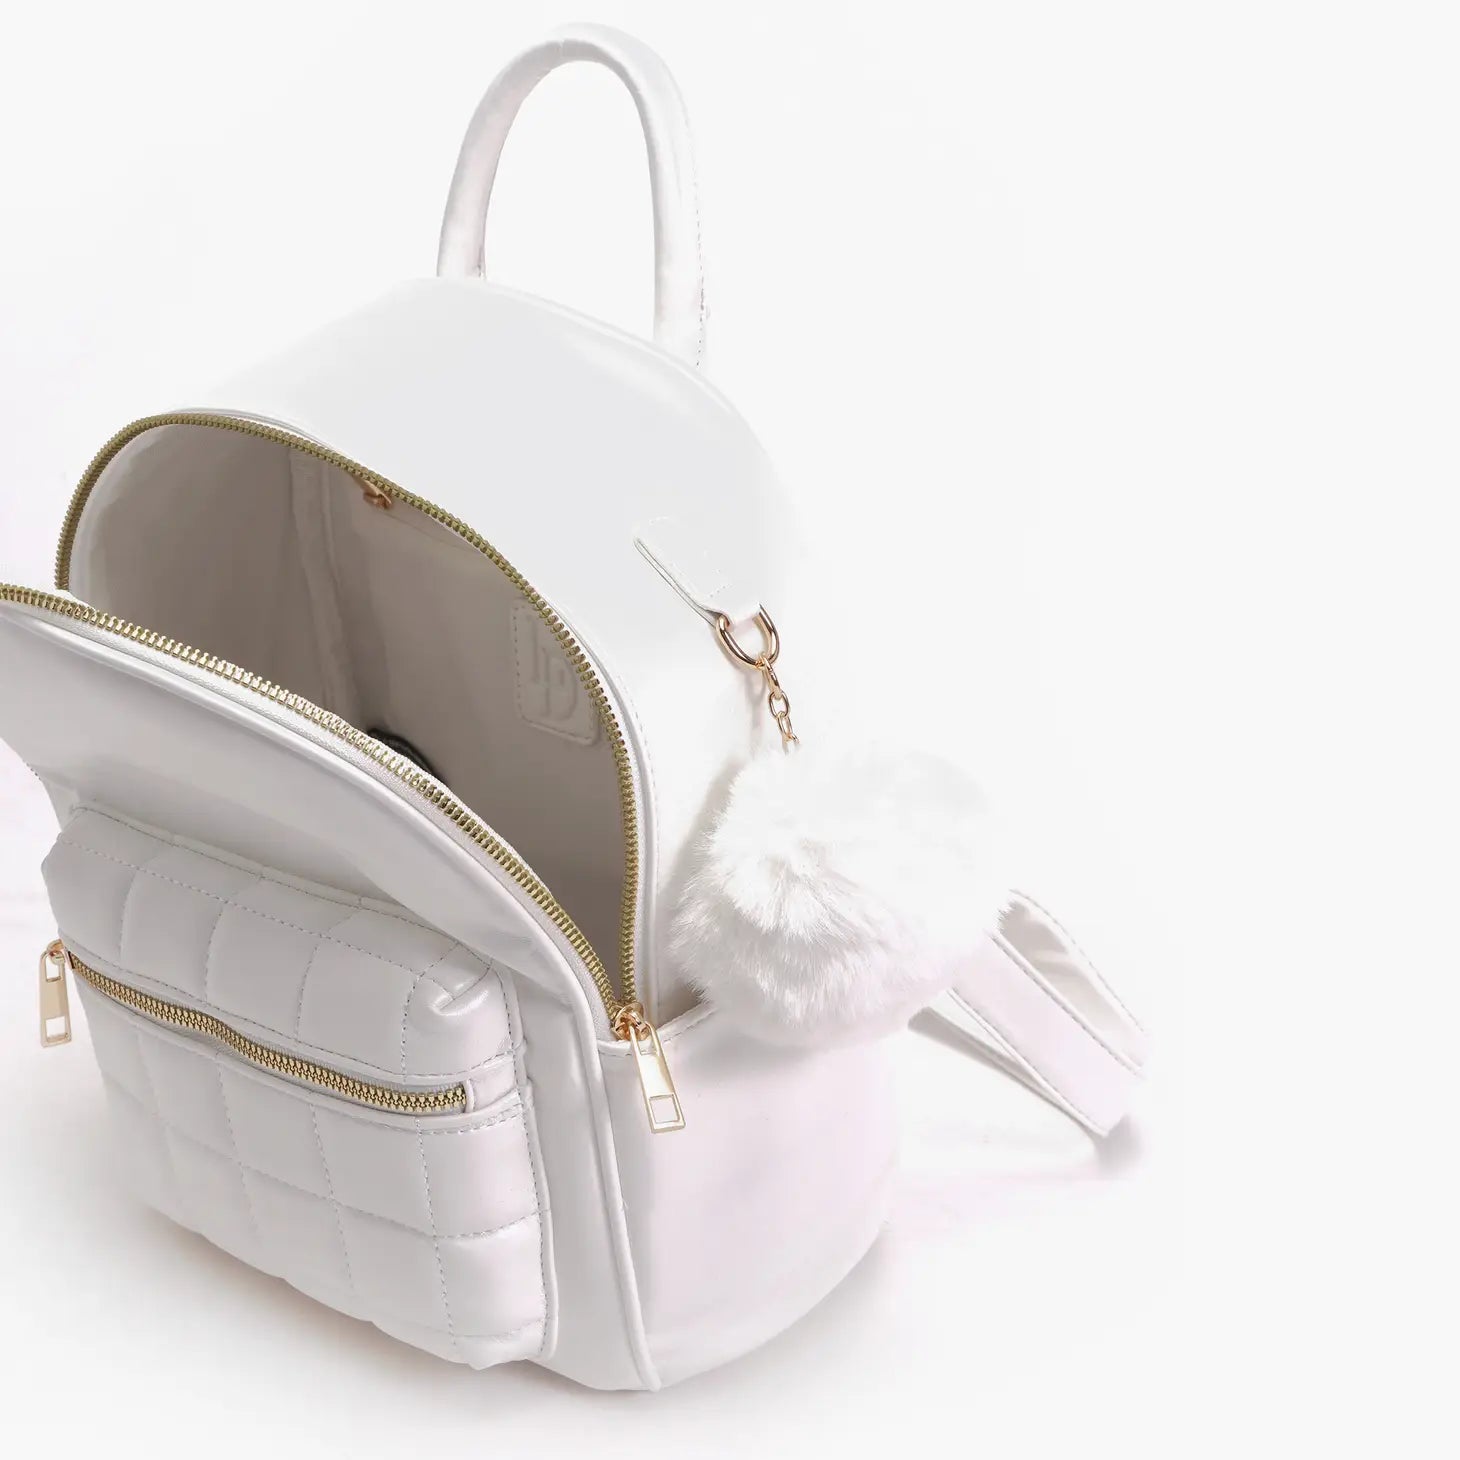 White Mini Backpack Purse.